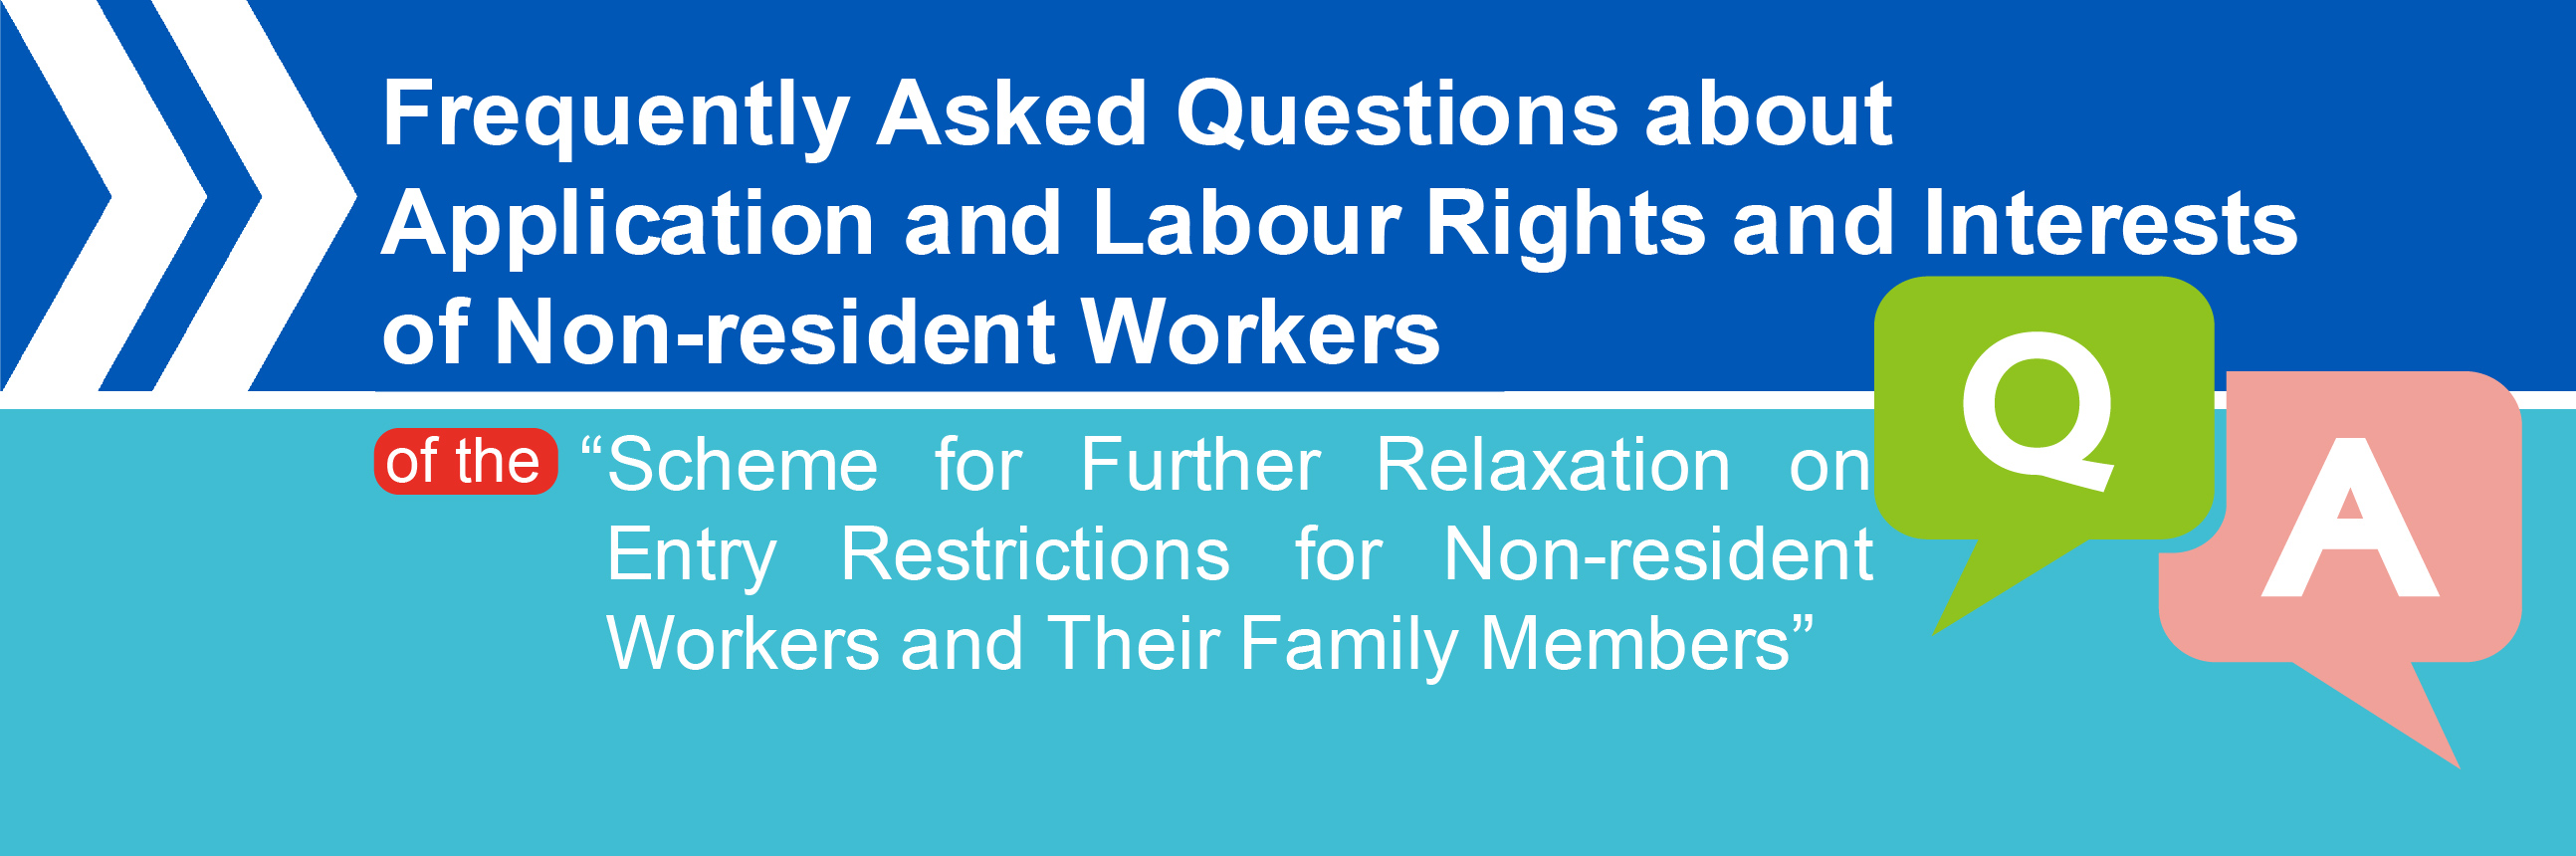 Compilação de questões sobre pedidos de autorização de contratação e direitos laborais do “Pedido de isenção de restrições de entrada para os trabalhadores domésticos estrangeiros”